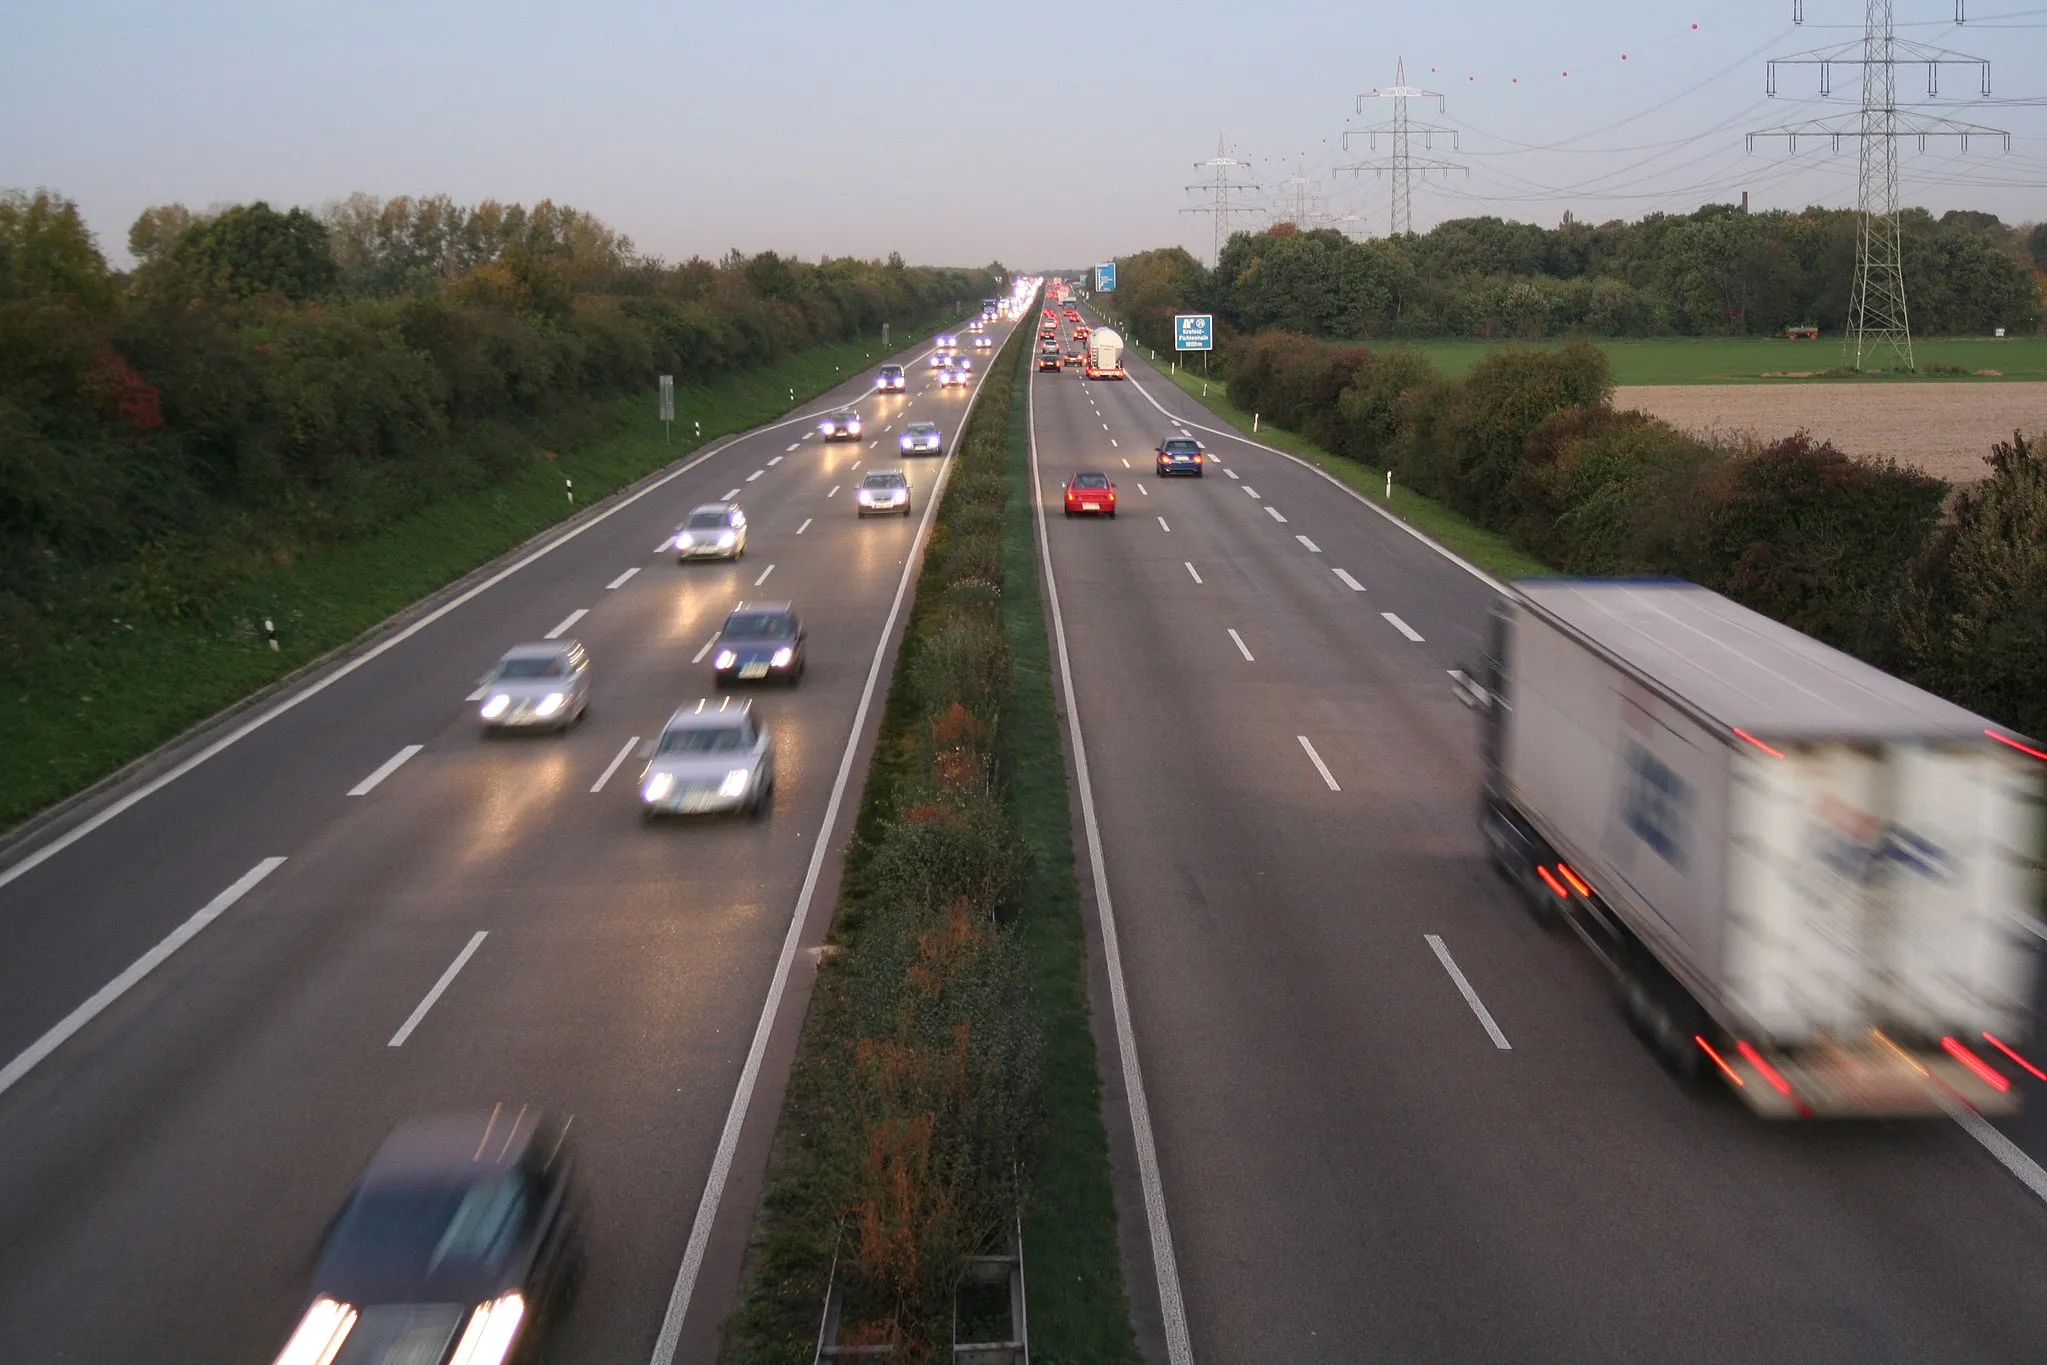 Photo showing: Autobahn A44 zwischen Willich (links) und Krefeld (rechts); rechts Freileitung (Bl. 2388, 220/110 kV)
Sonstiges: gemeinfreie Lizenz, da die Rechte bei mir liegen.